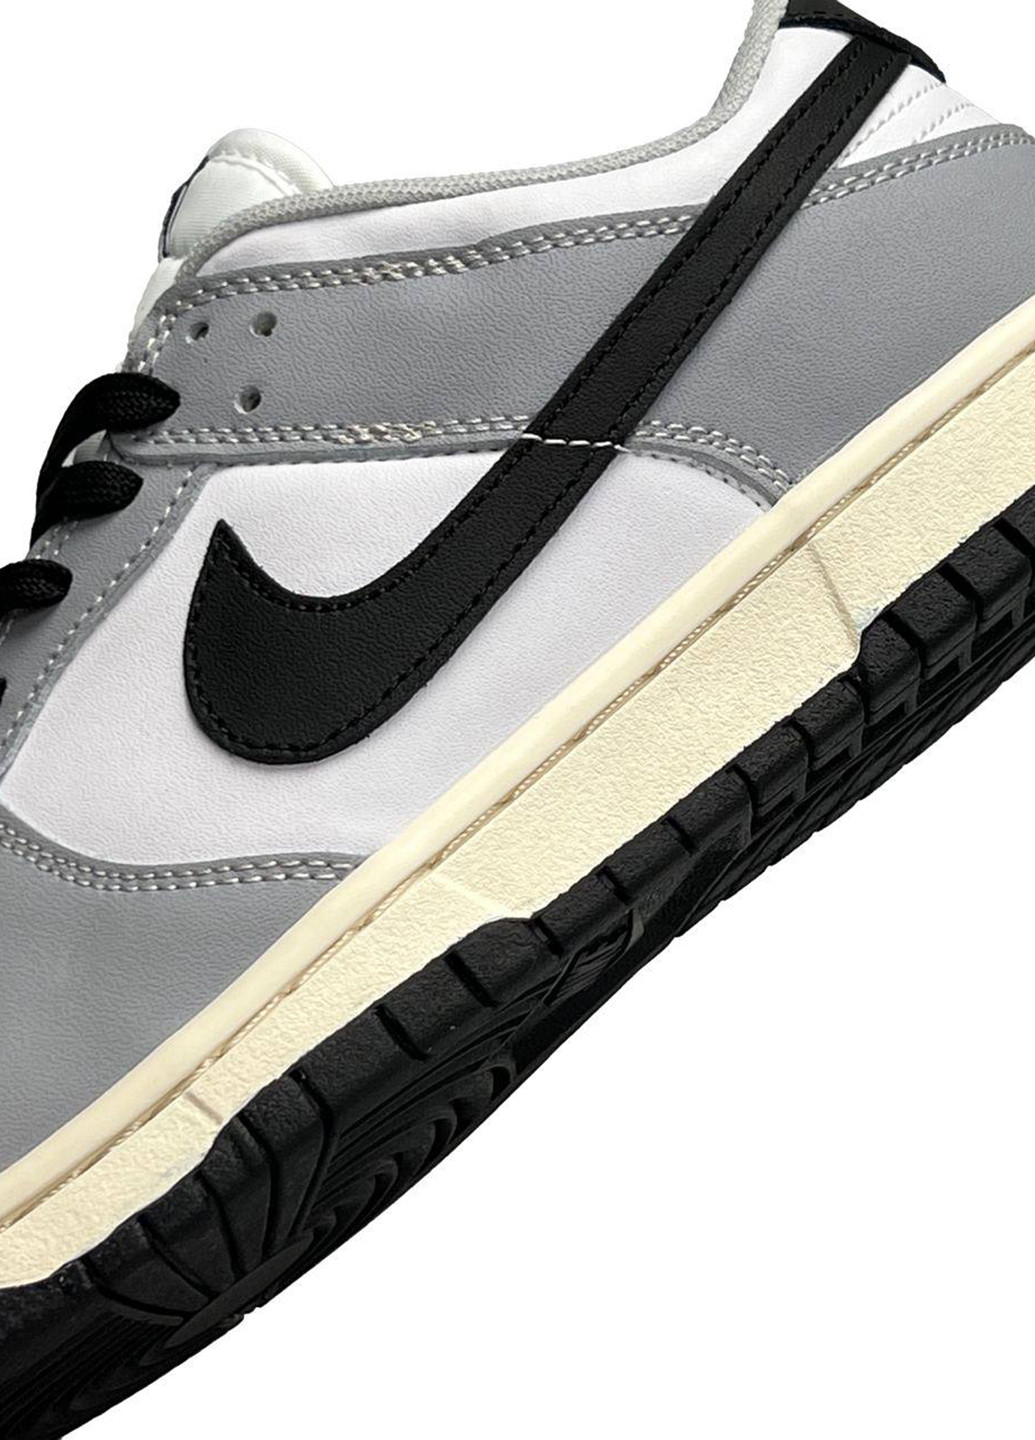 Цветные всесезонные кроссовки Nike SB Dunk Low Grey&Black